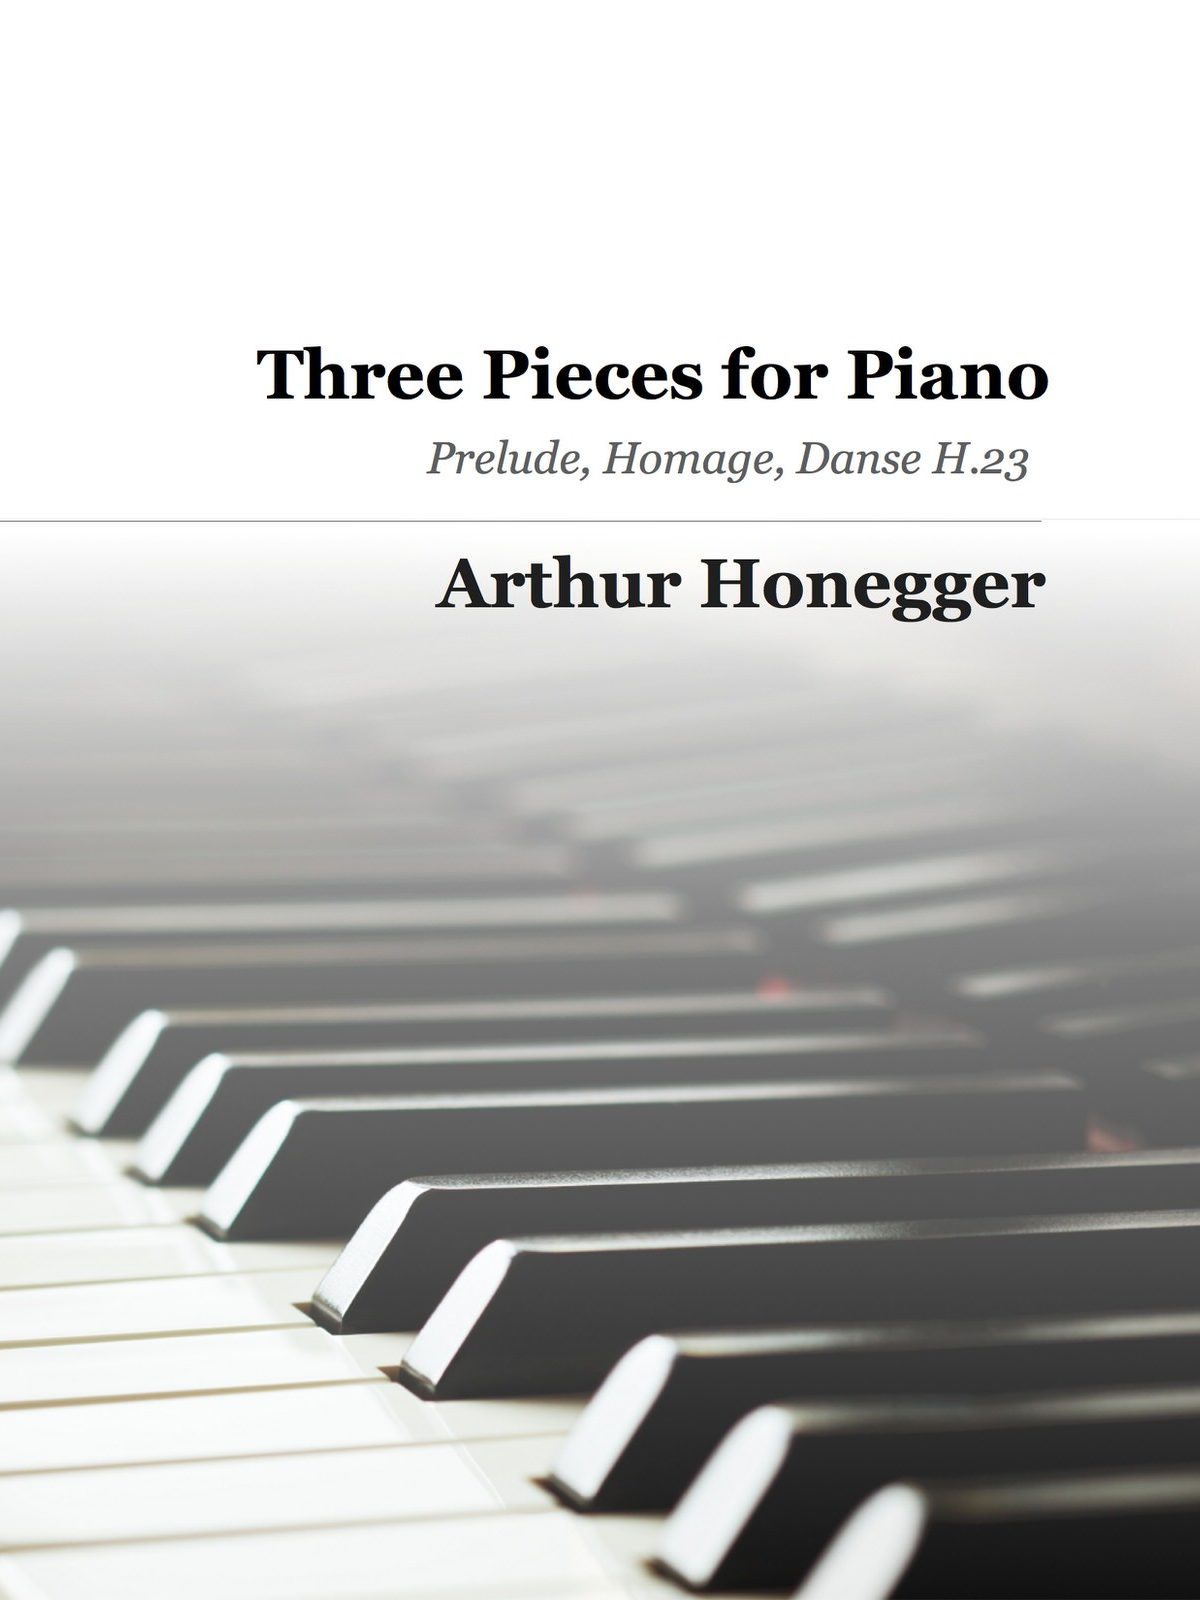 Honegger, 3 Pieces for Piano H.23-p01